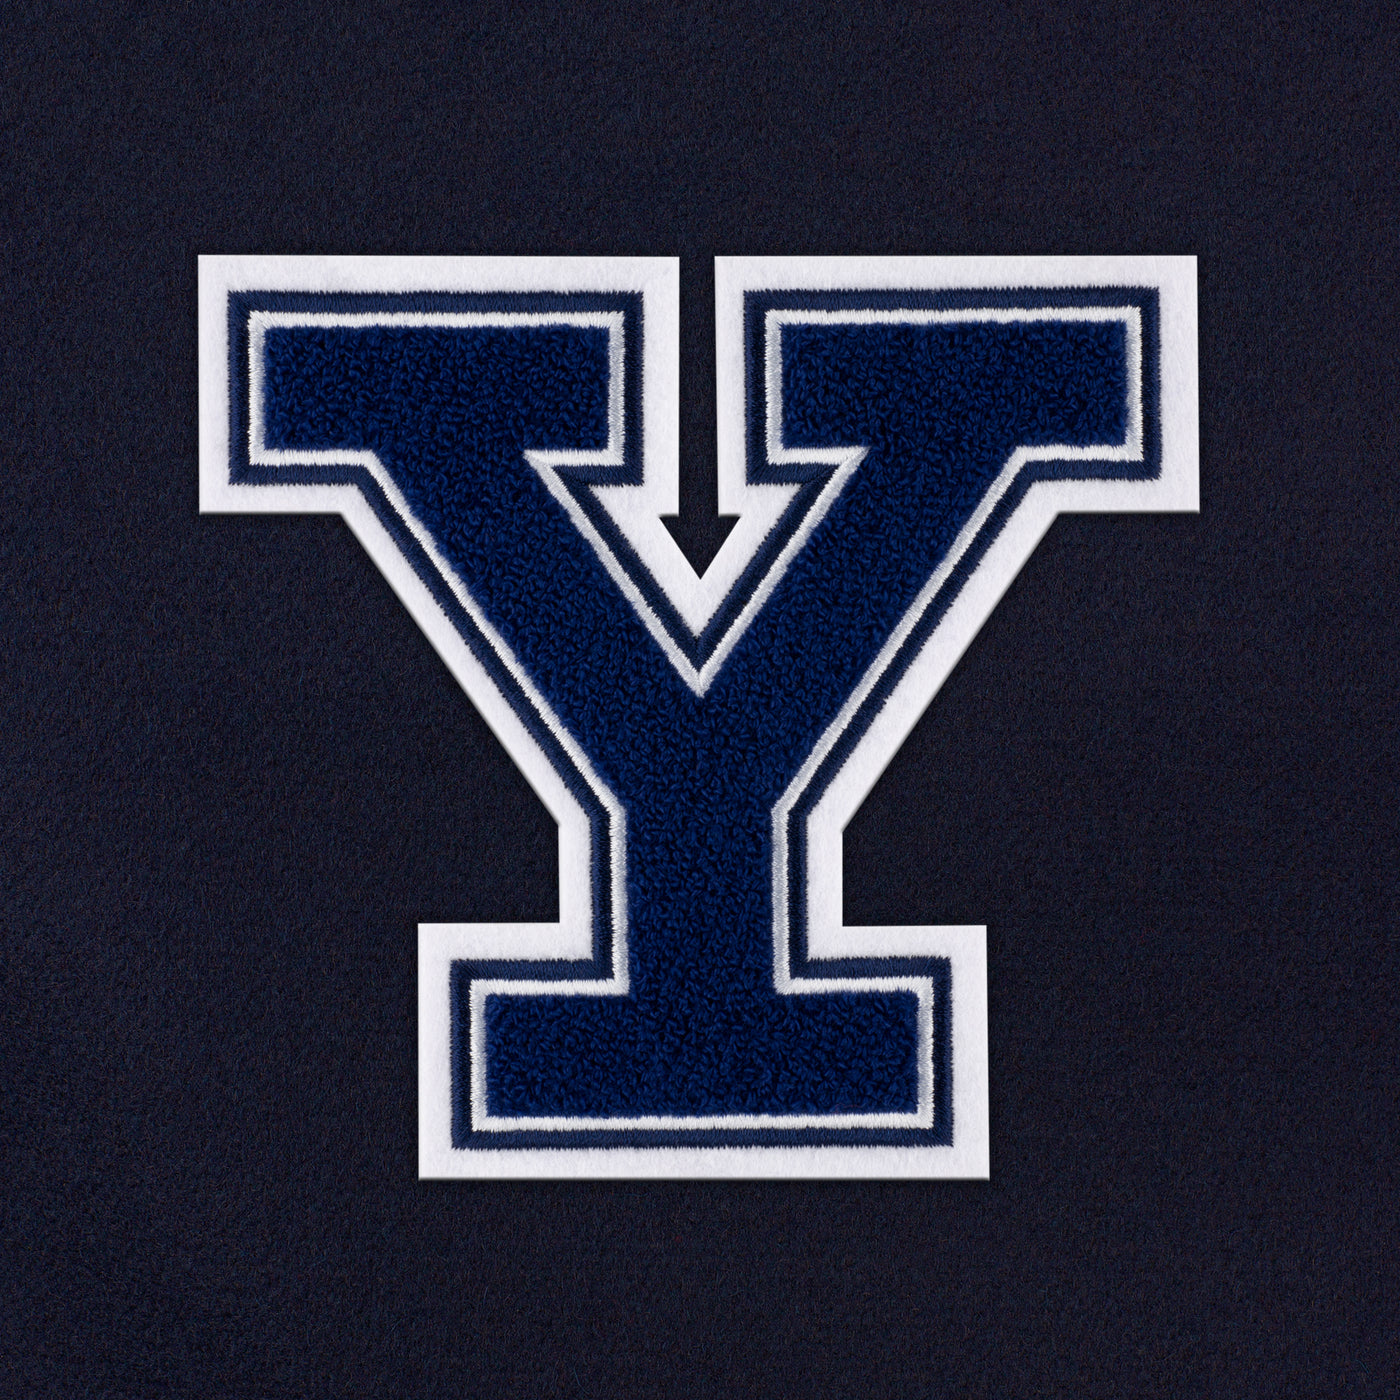 Yale Bulldogs "Y" Weekender Duffle Bag